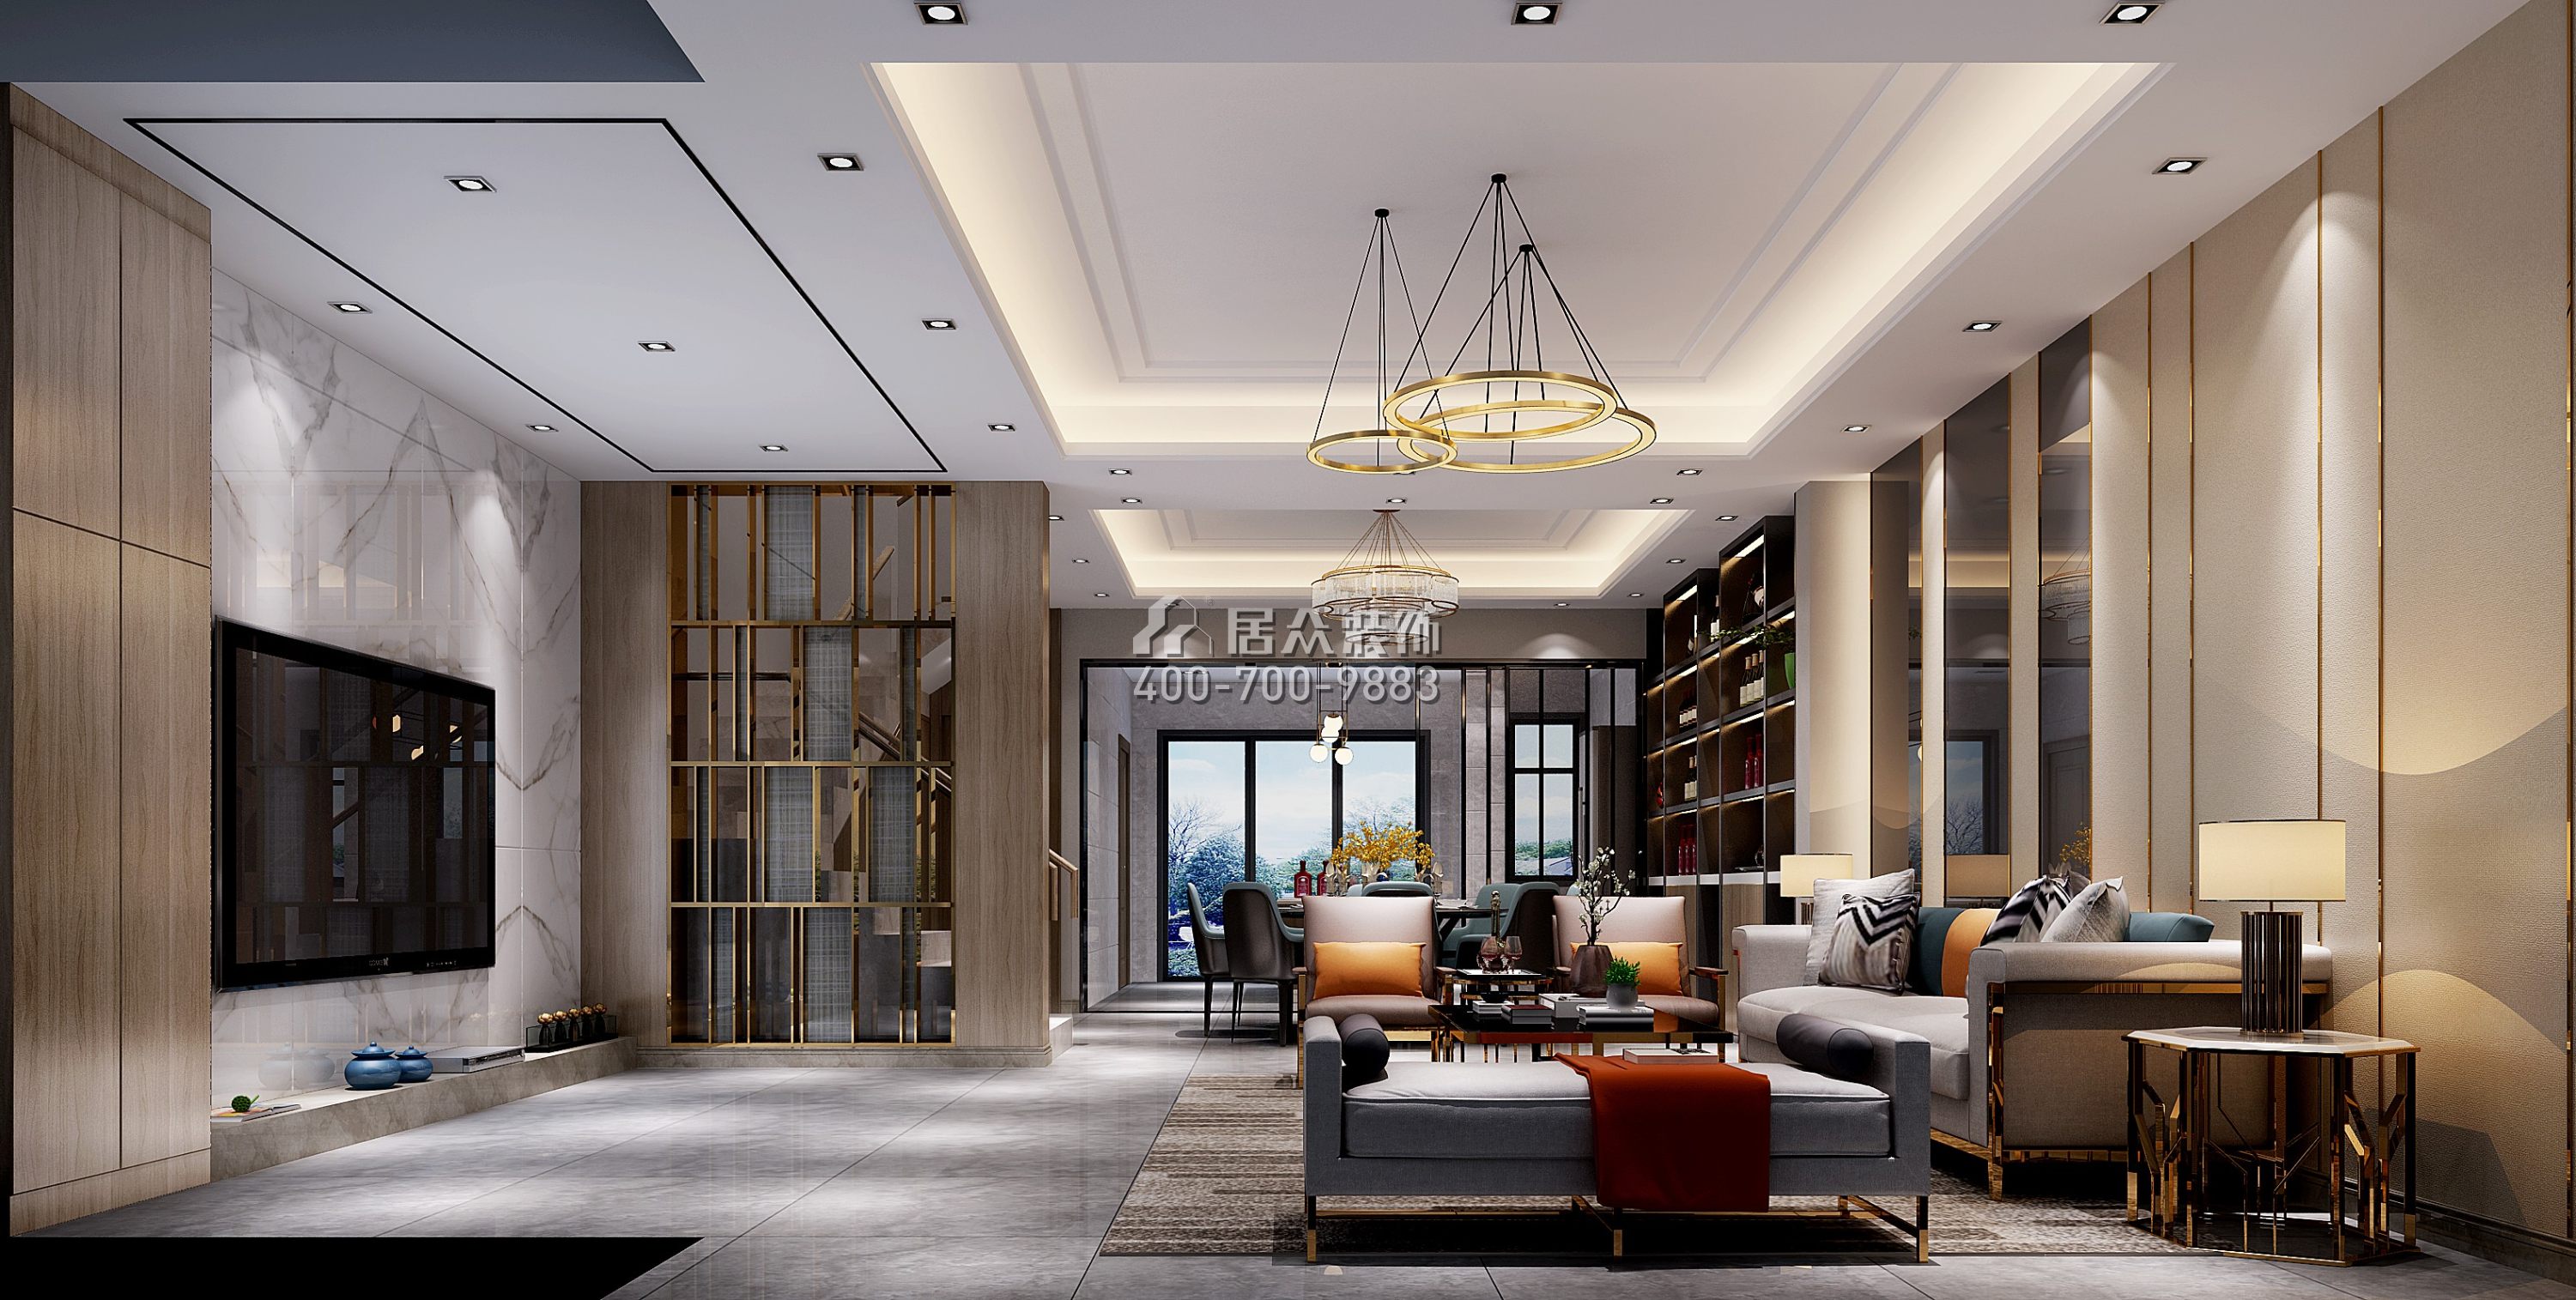 卓越蔚藍山250平方米新古典風格別墅戶型客廳裝修效果圖